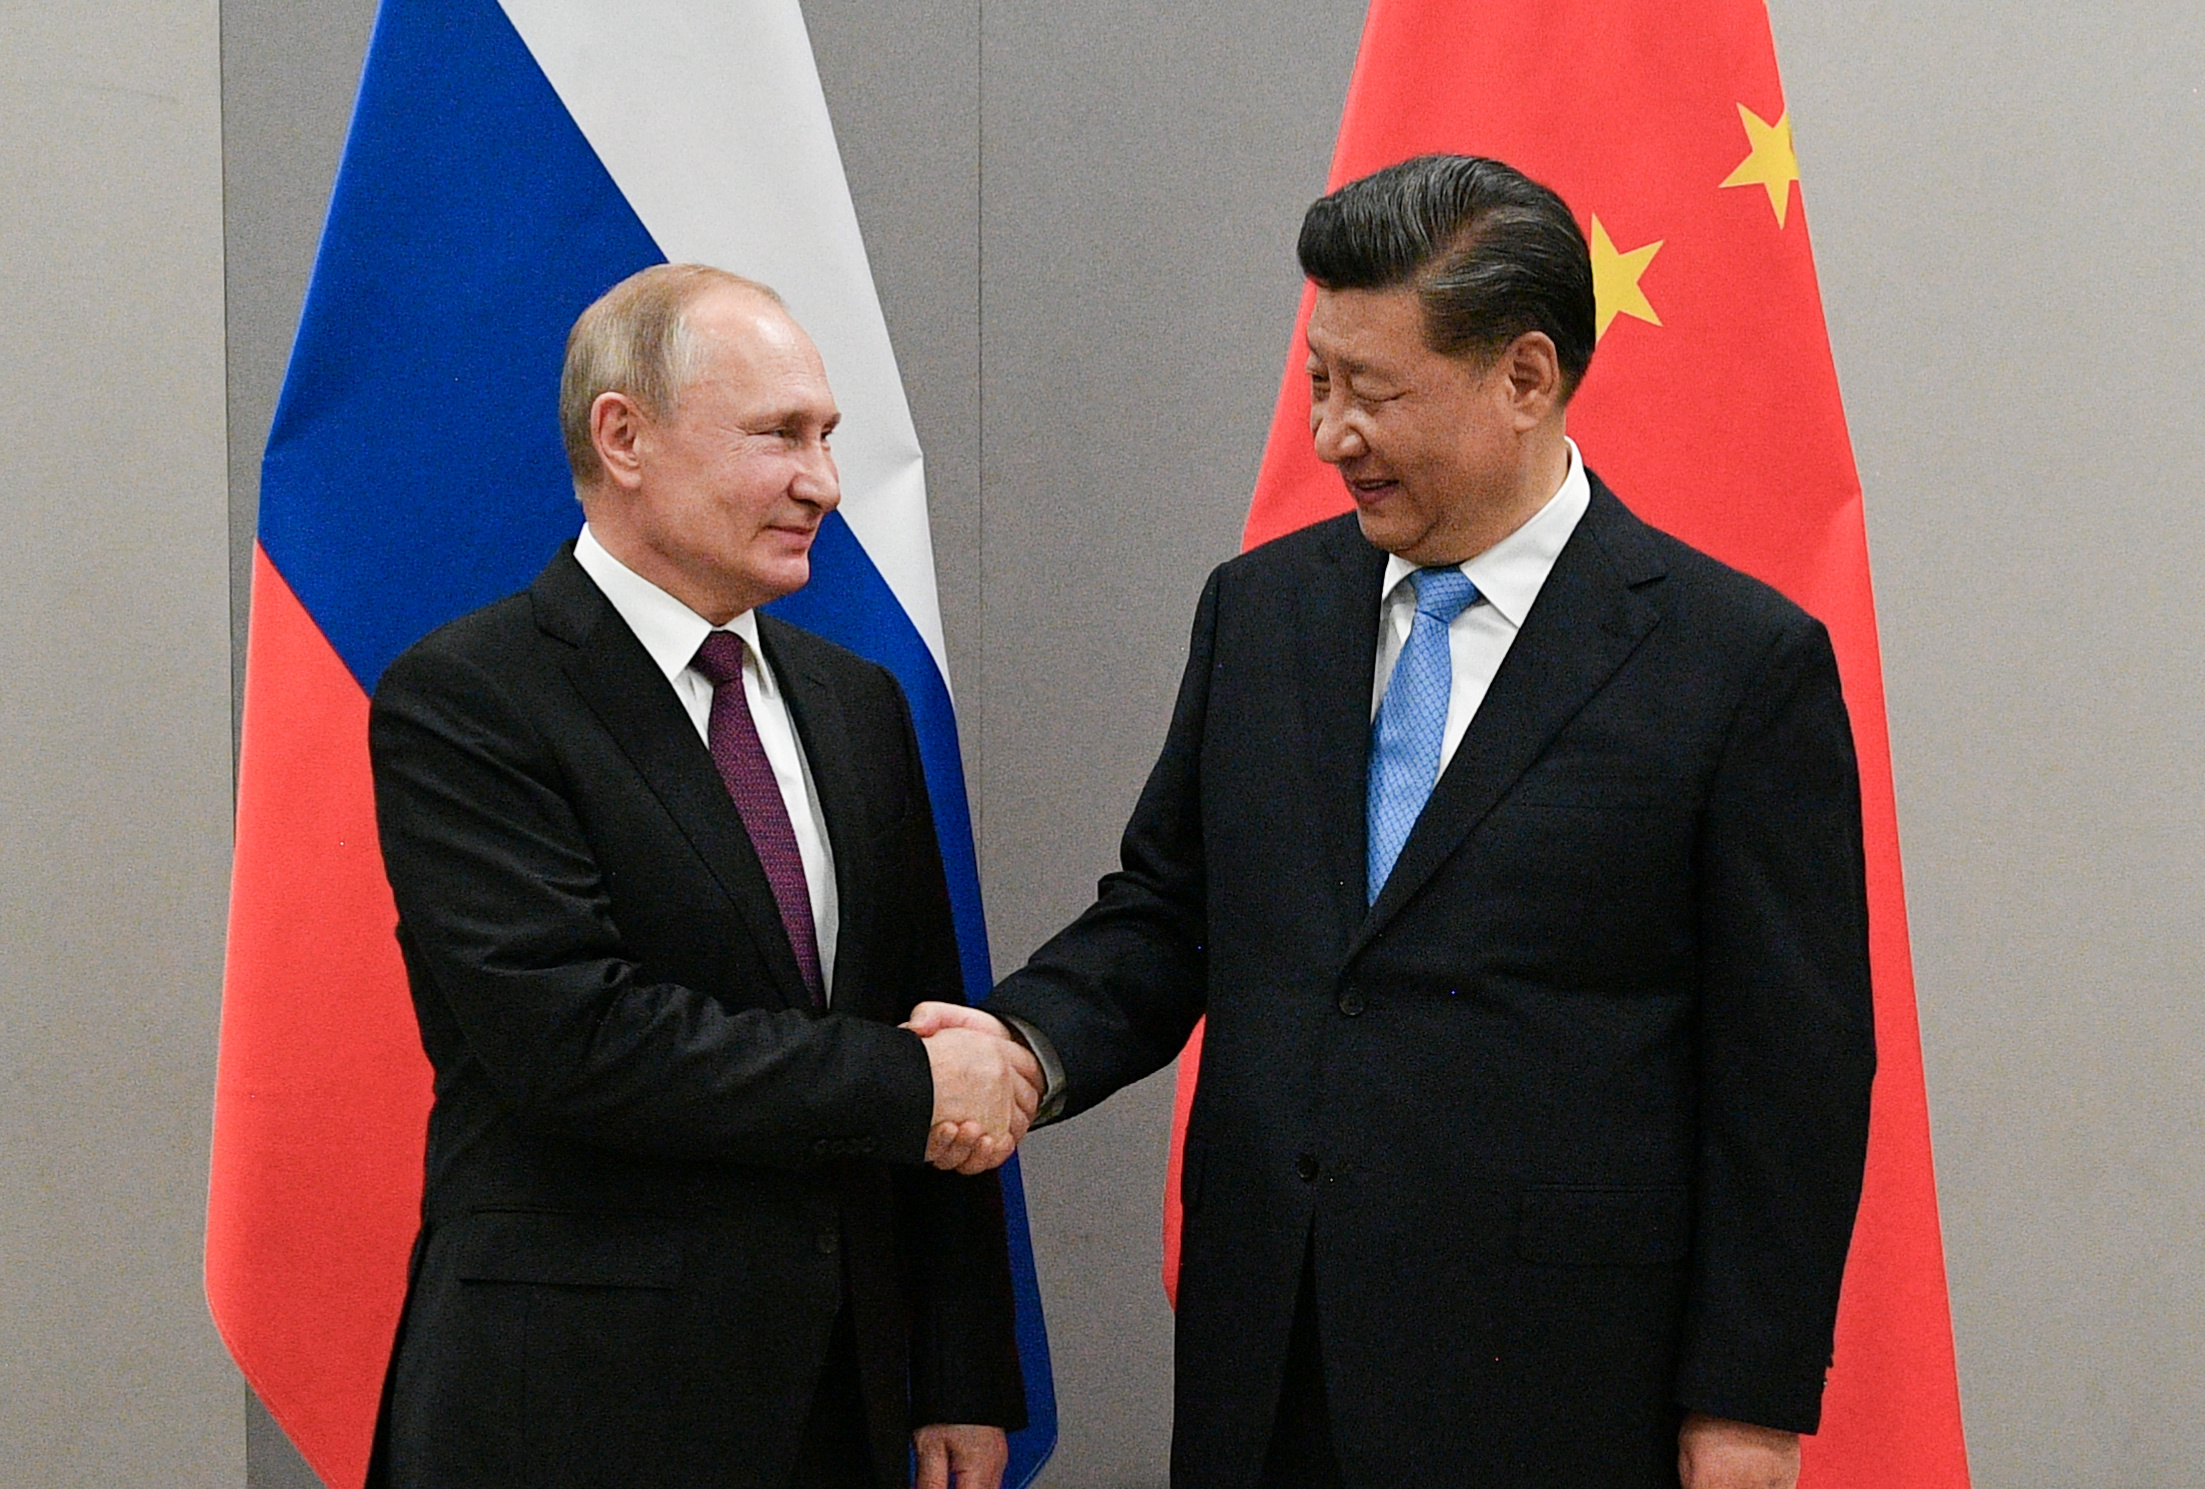 În plin război, Putin s-a întâlnit azi cu președintele chinez Xi Jinping. În ce context și care este motivul întâlnirii